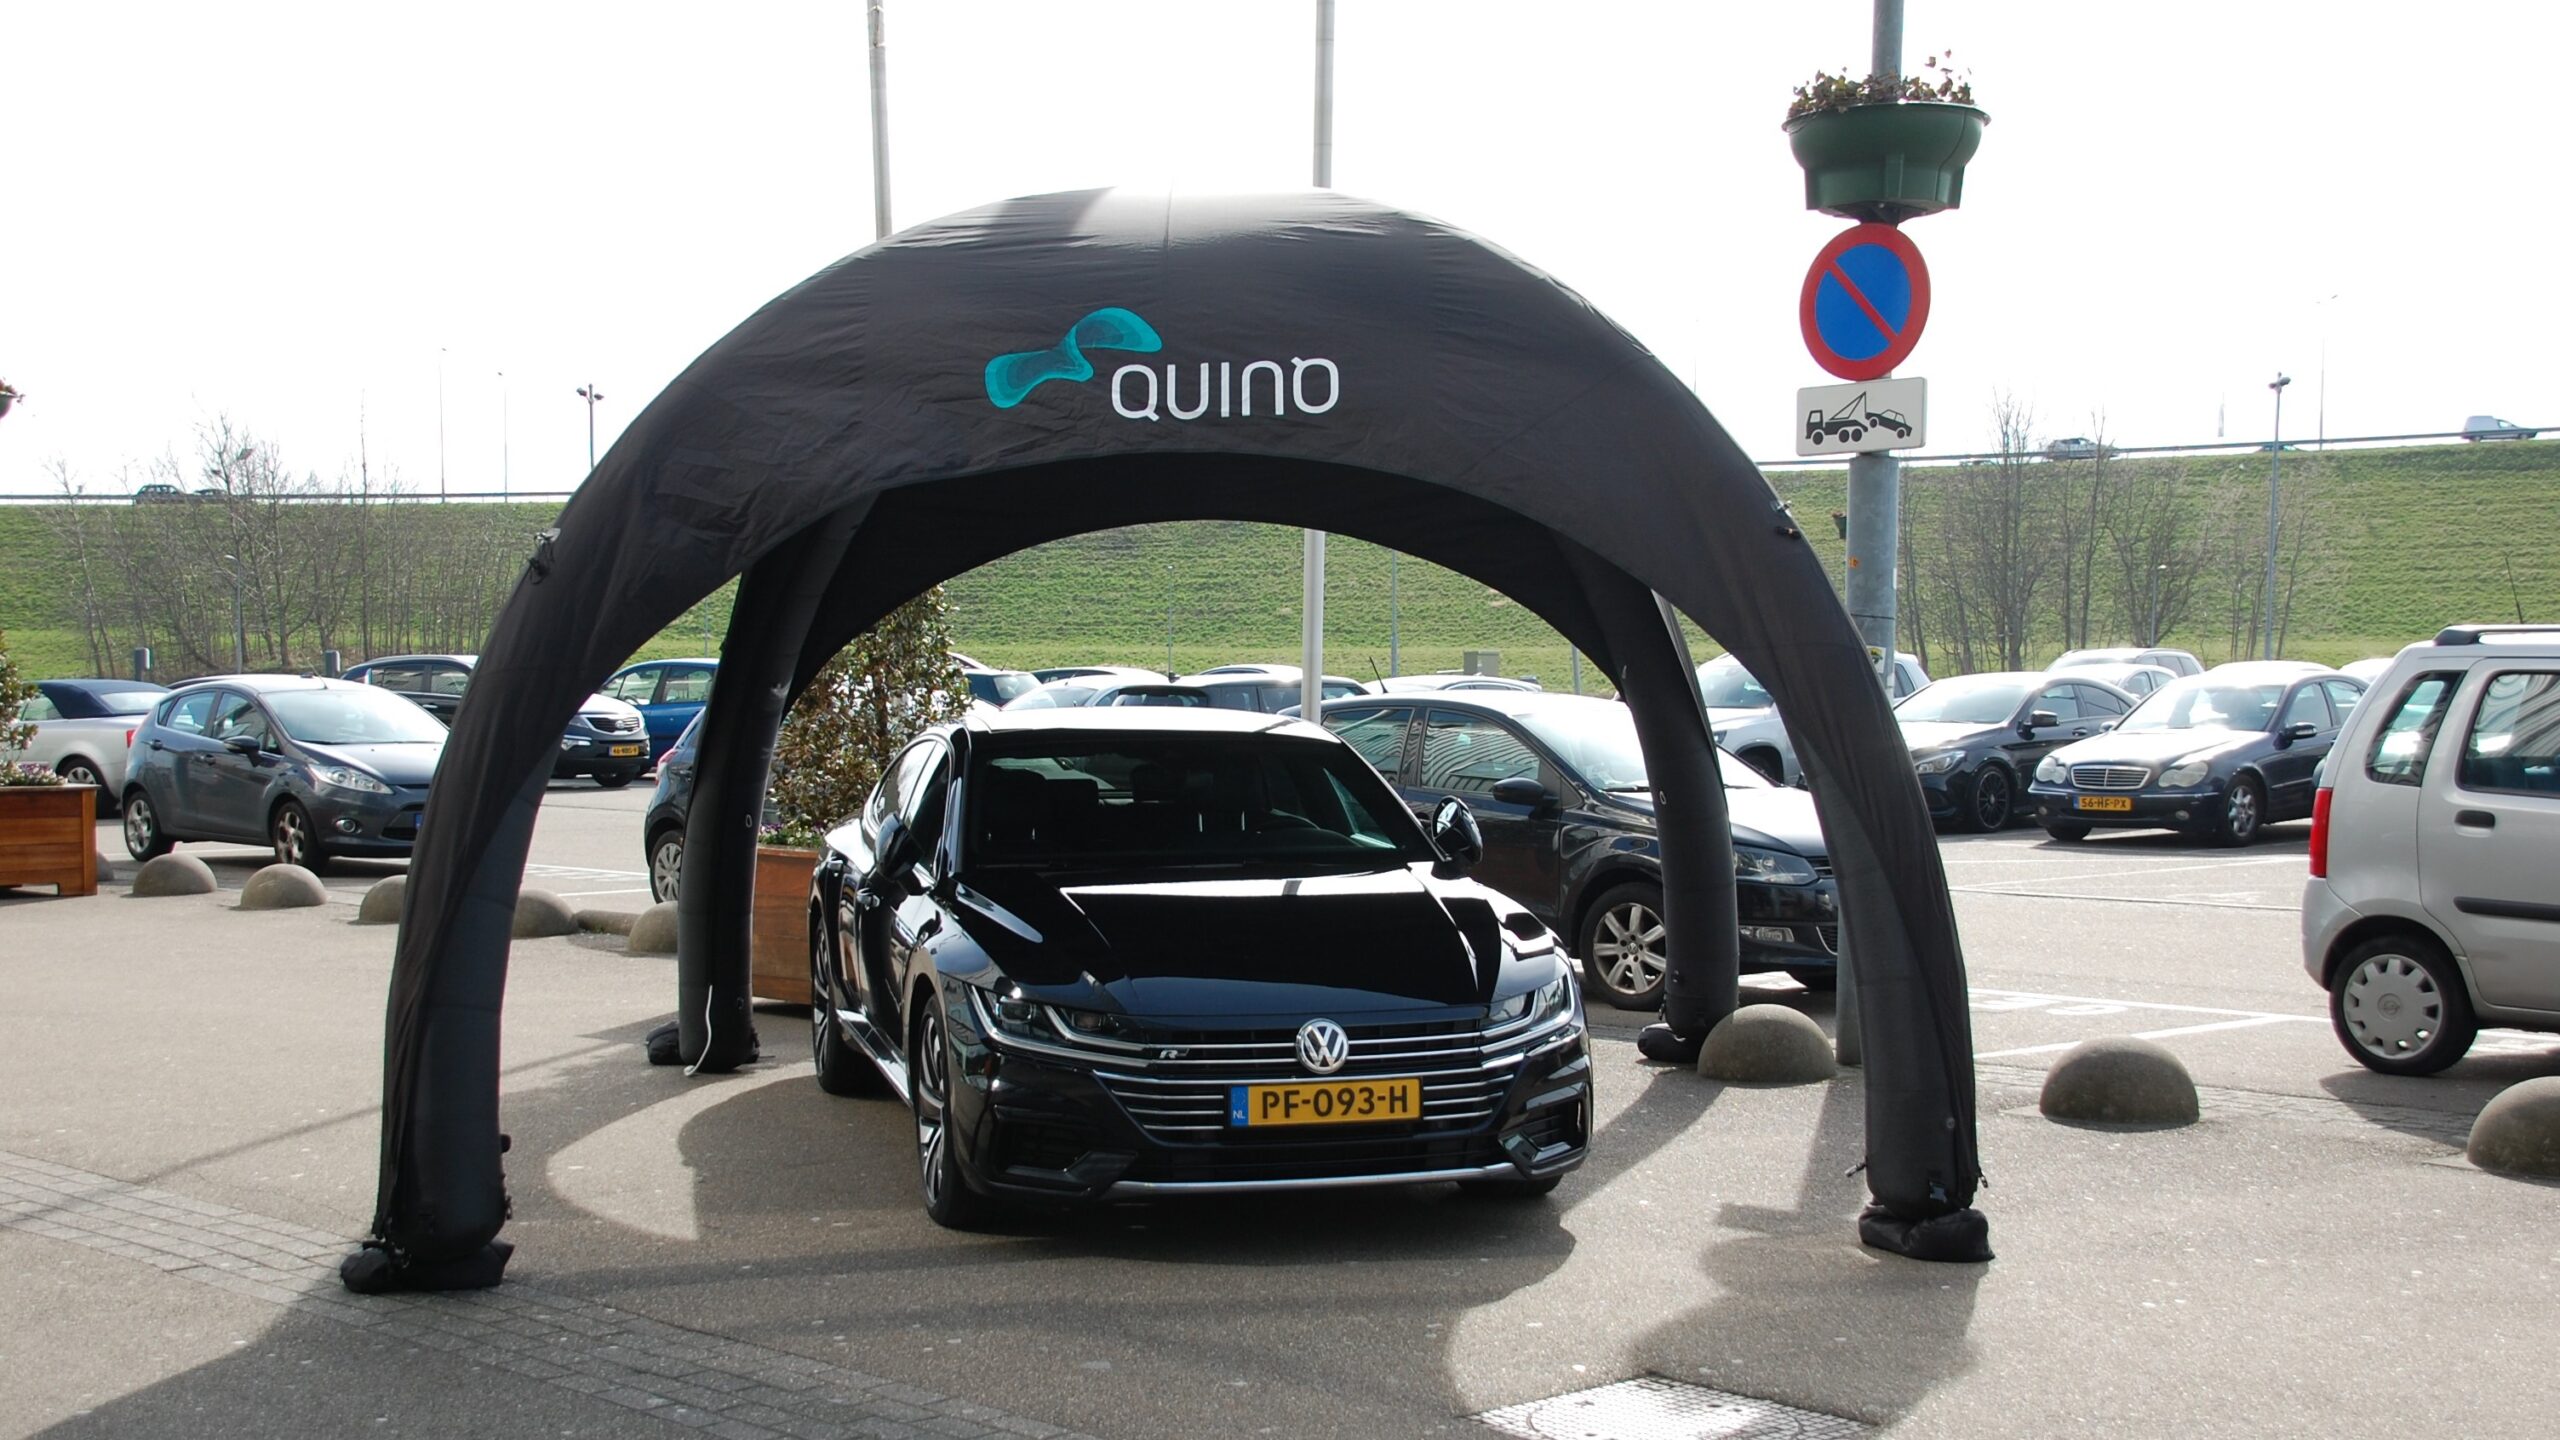 Quinq-tent-VW-Den-Haag-1